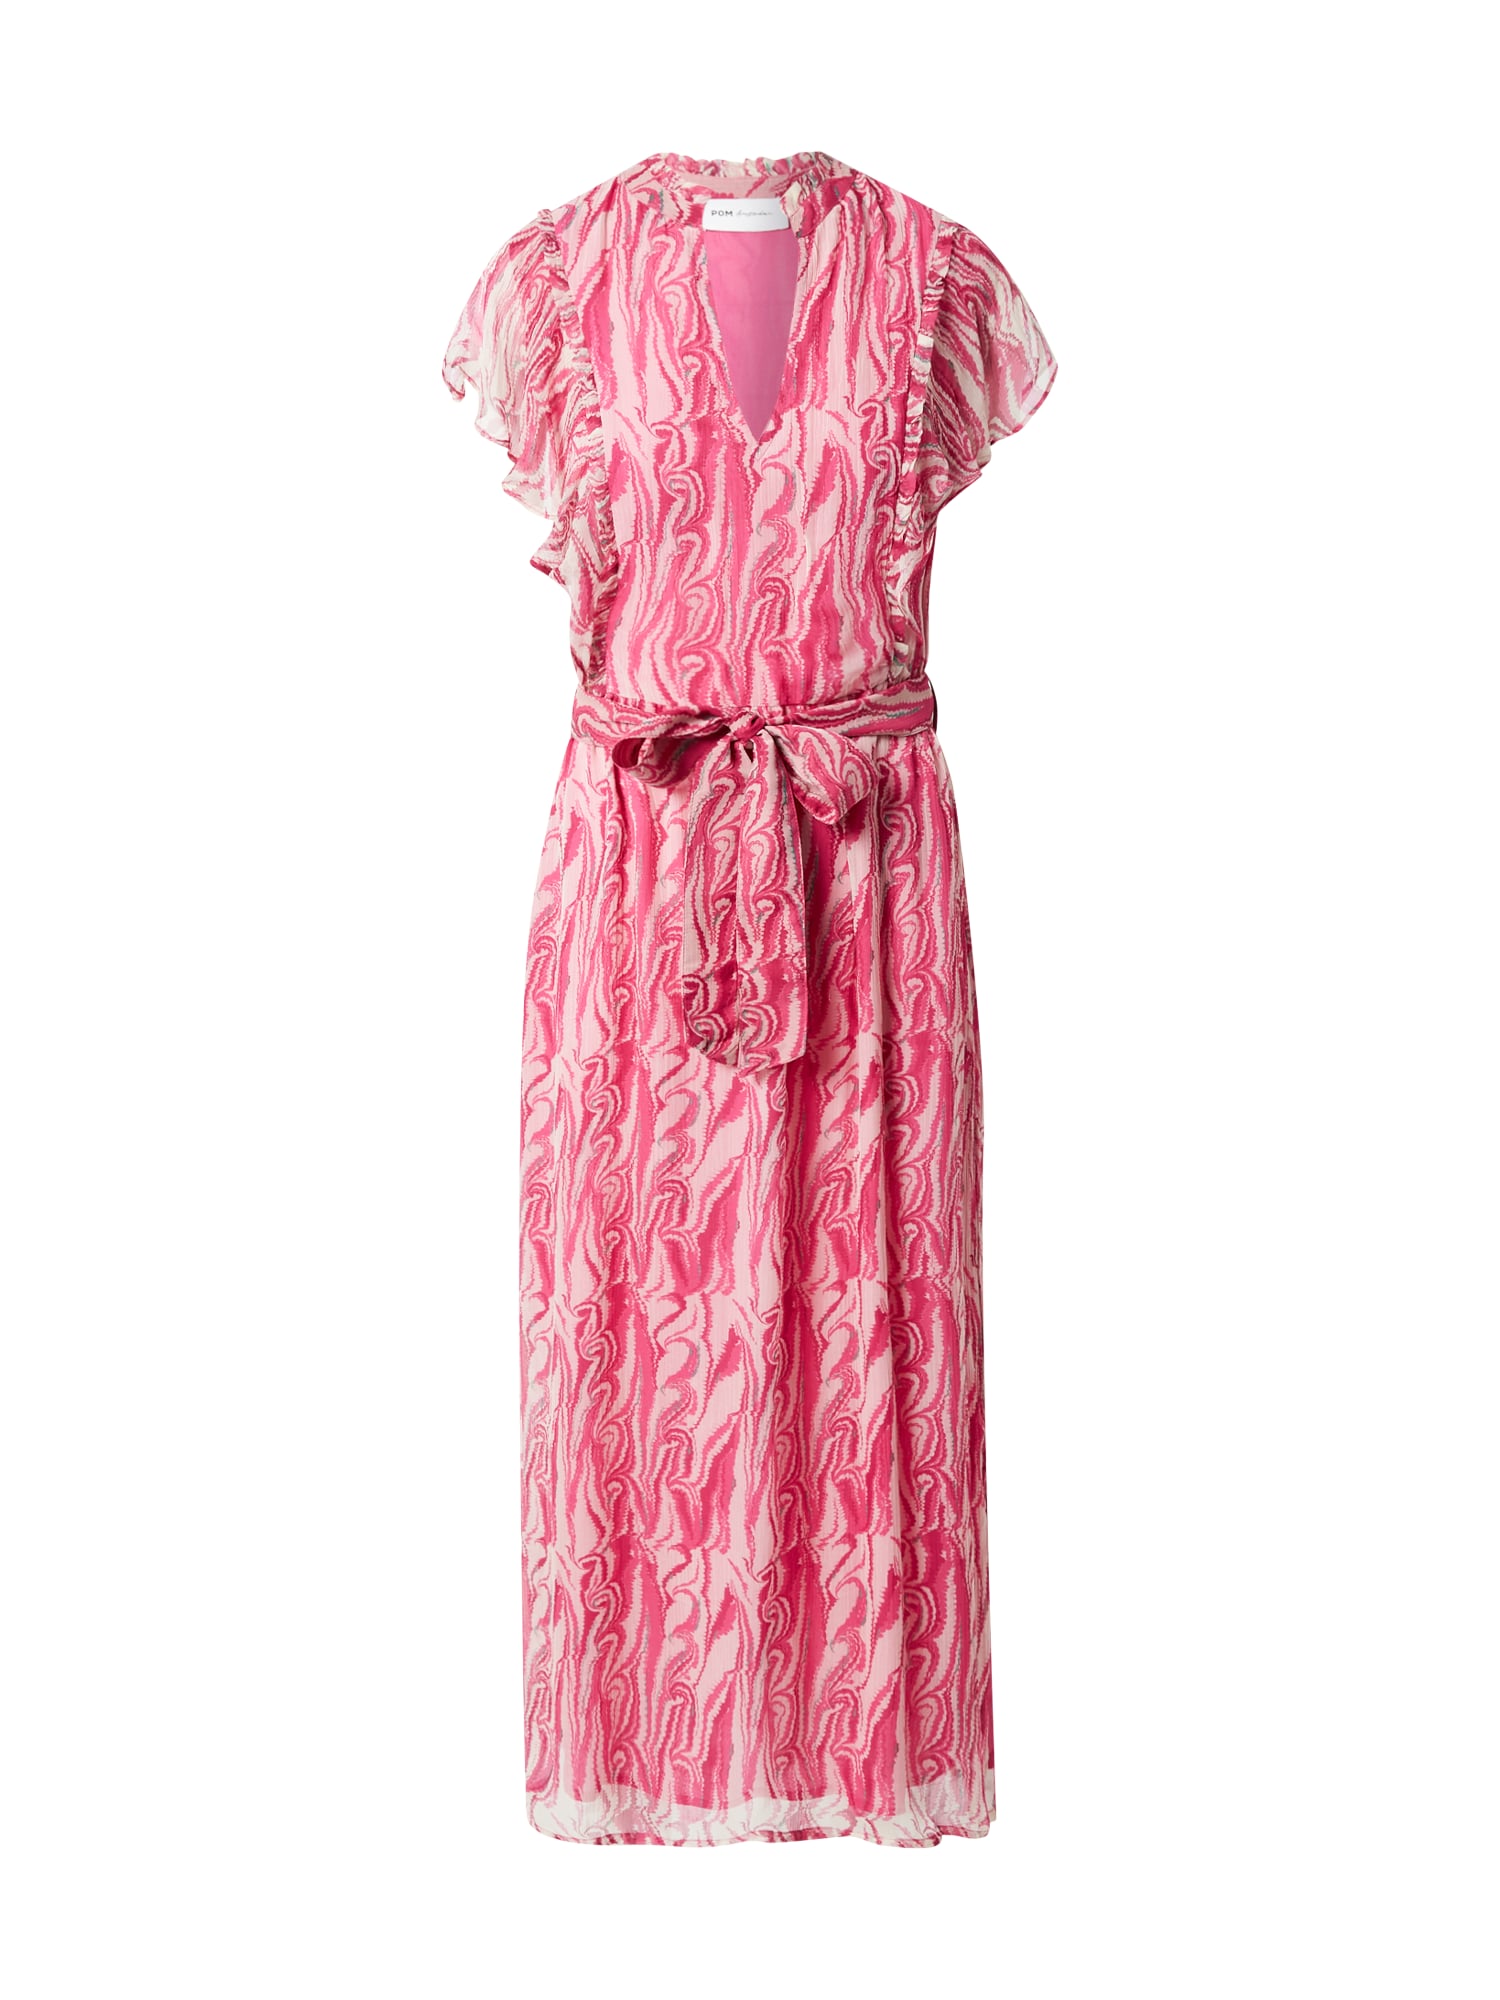 POM Amsterdam Suknelė 'Marmer' fuksijų spalva / ryškiai rožinė spalva